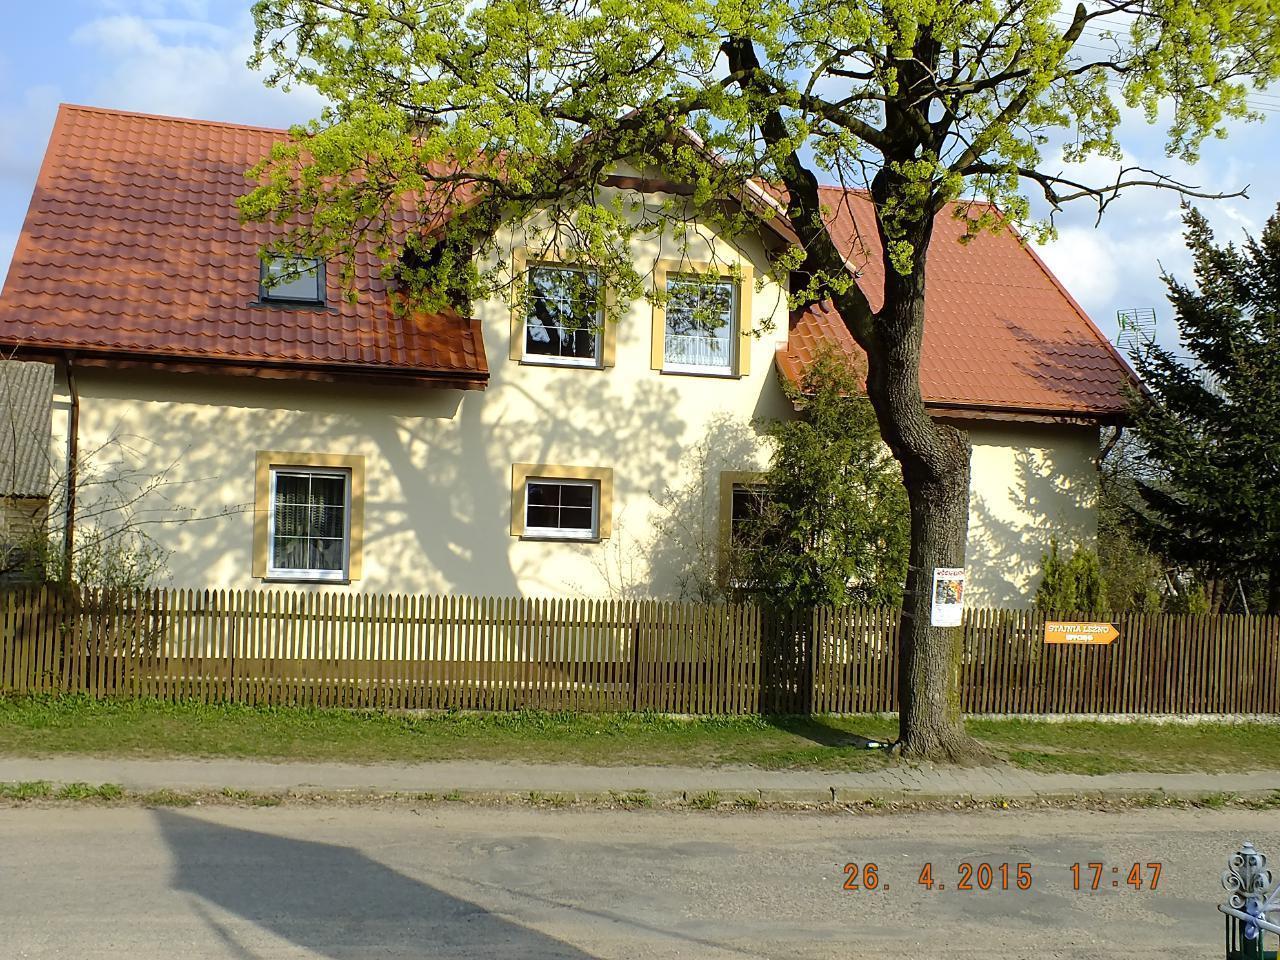 Ferienhaus in Wielkie Le?no mit Sauna, Grill und g Bauernhof in Polen